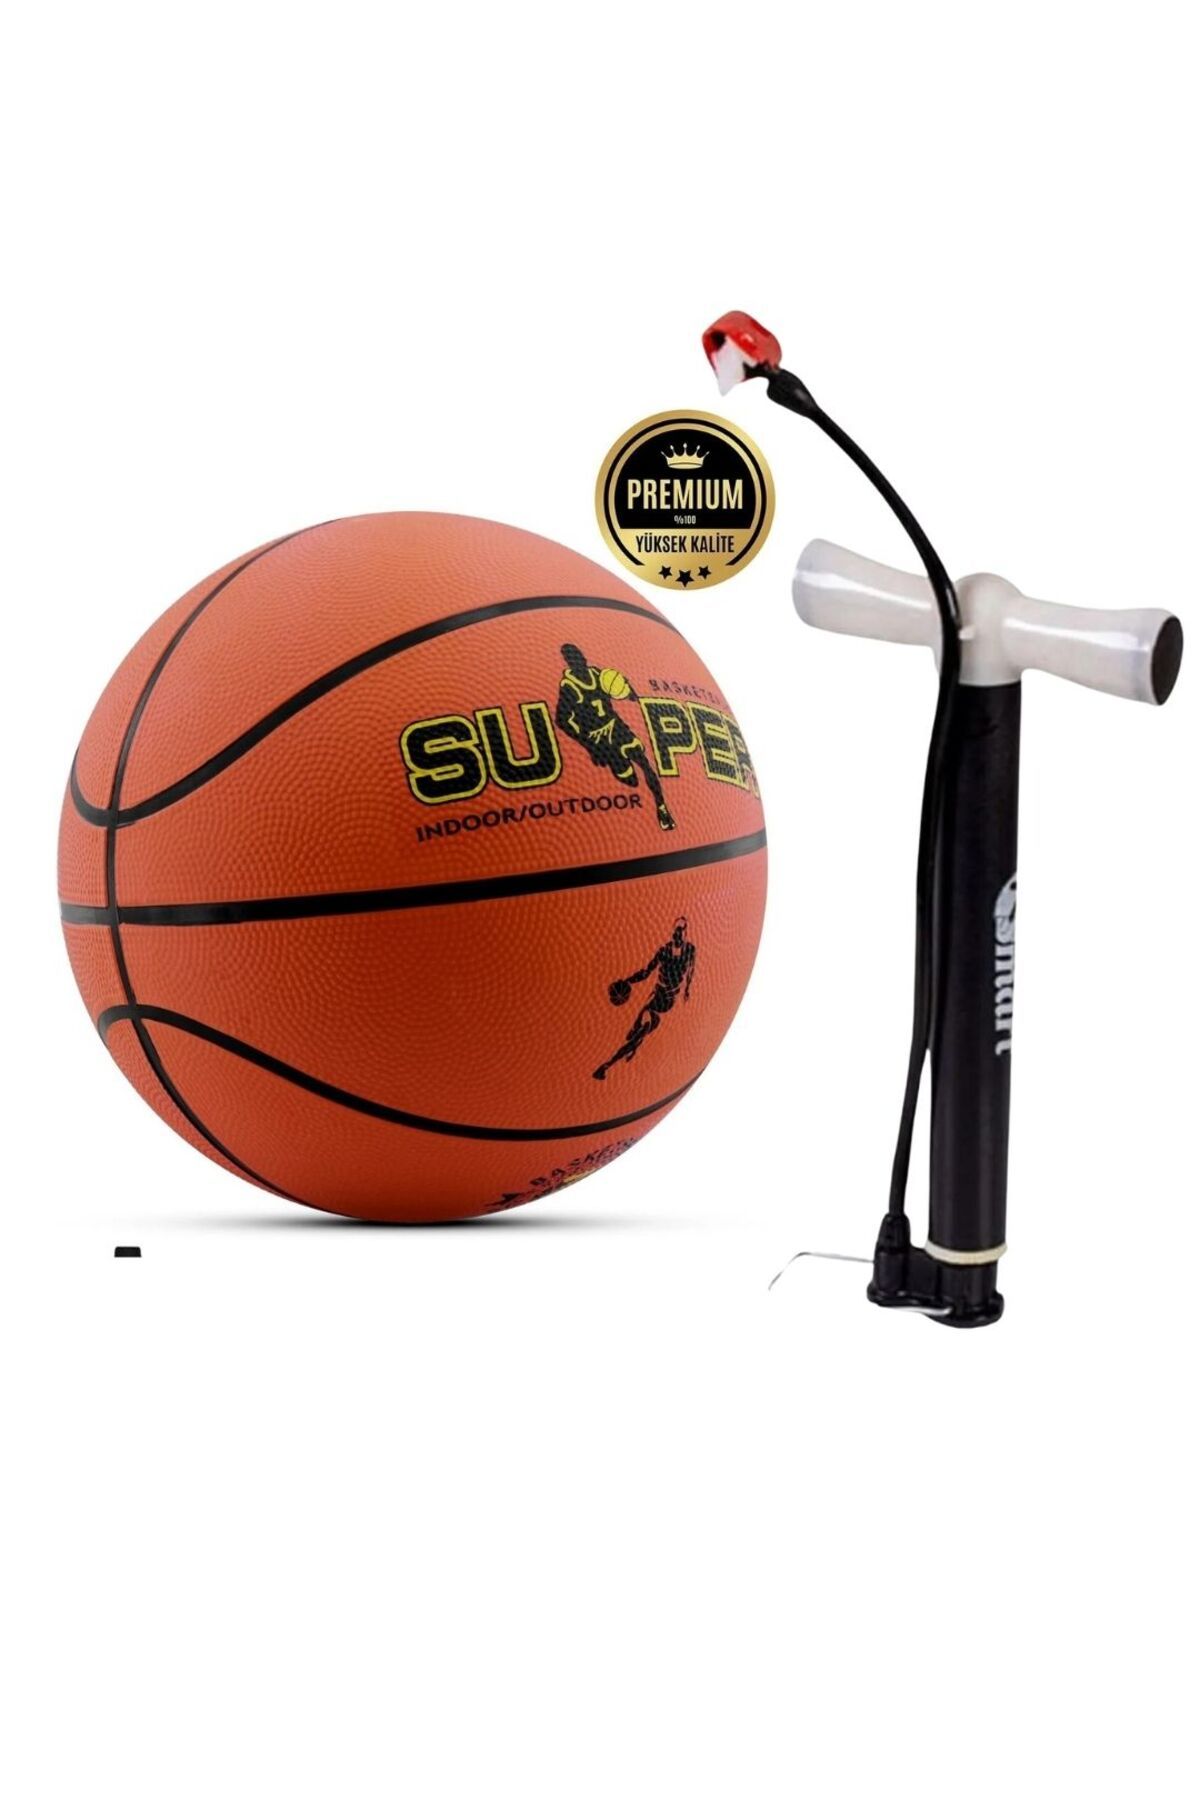 Janva 5 numara Basket TopuBasketbol Topu Yeni Model Sağlam Kaliteli Pompa Hediyelidir.